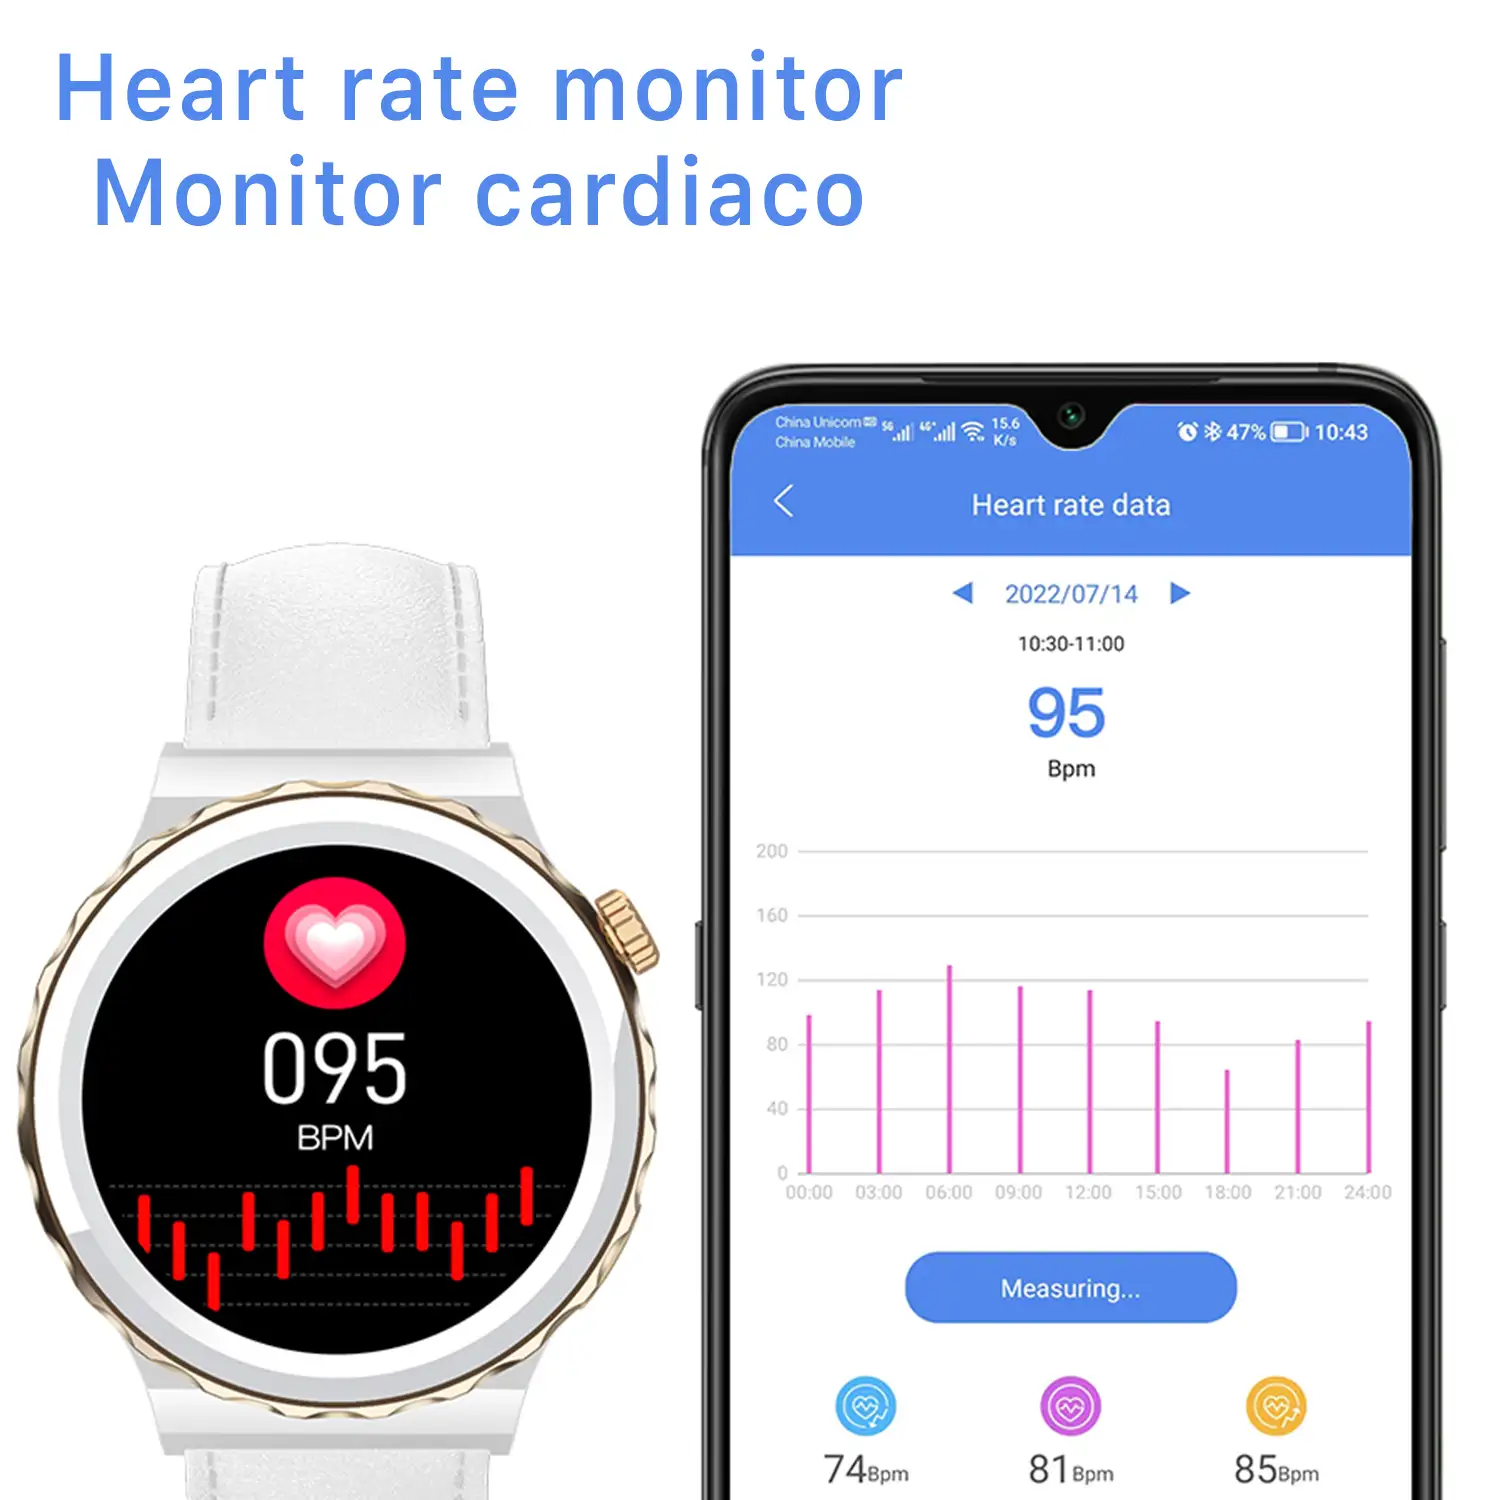 Smartwatch E23 con monitor de tensión y O2 en sangre. 15 modos deportivos, NFC.